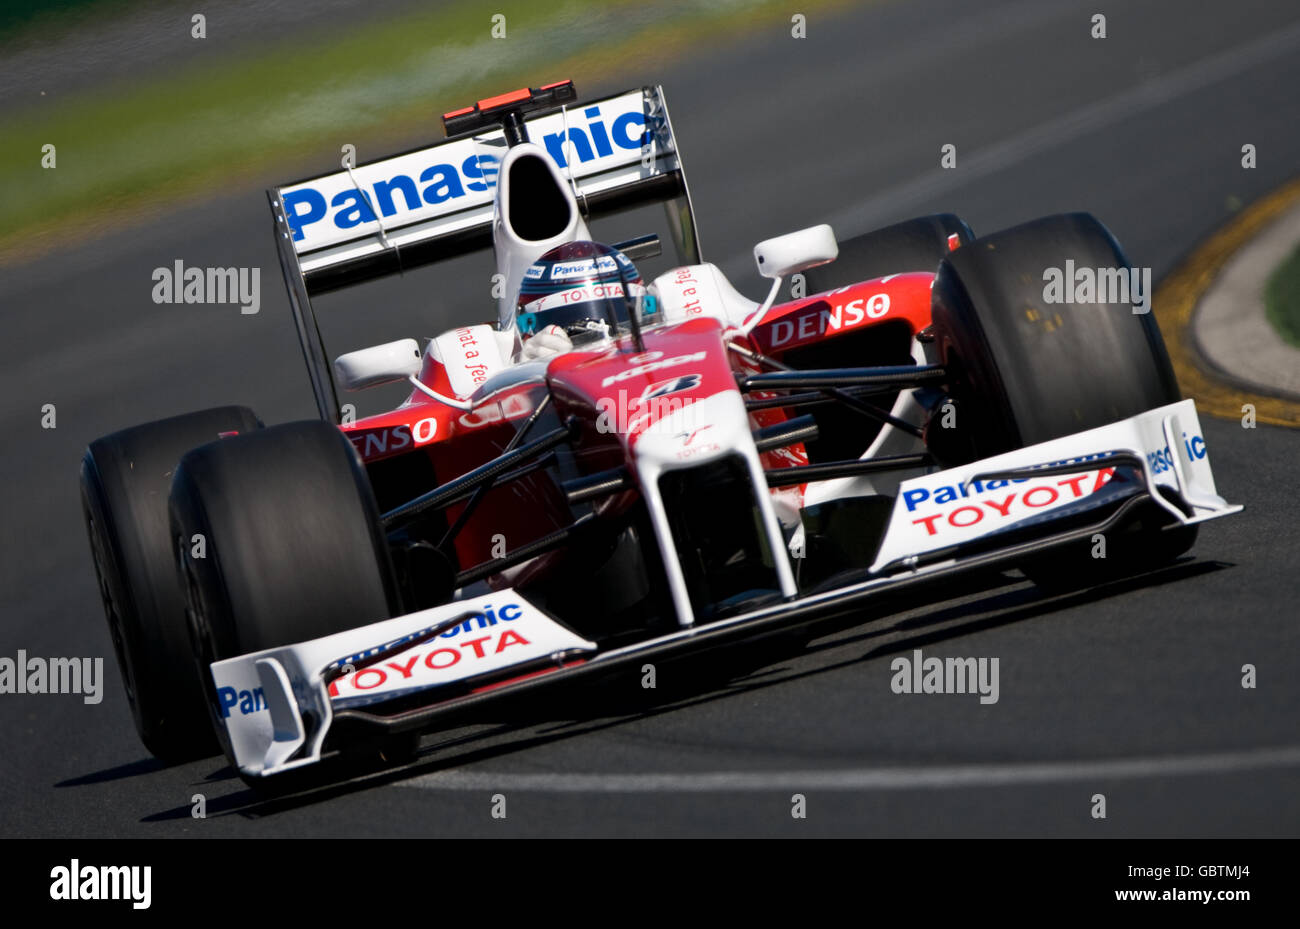 Jarno Trulli de Toyota durante la sesión de calificación en Albert Park, Melbourne, Australia. Foto de stock